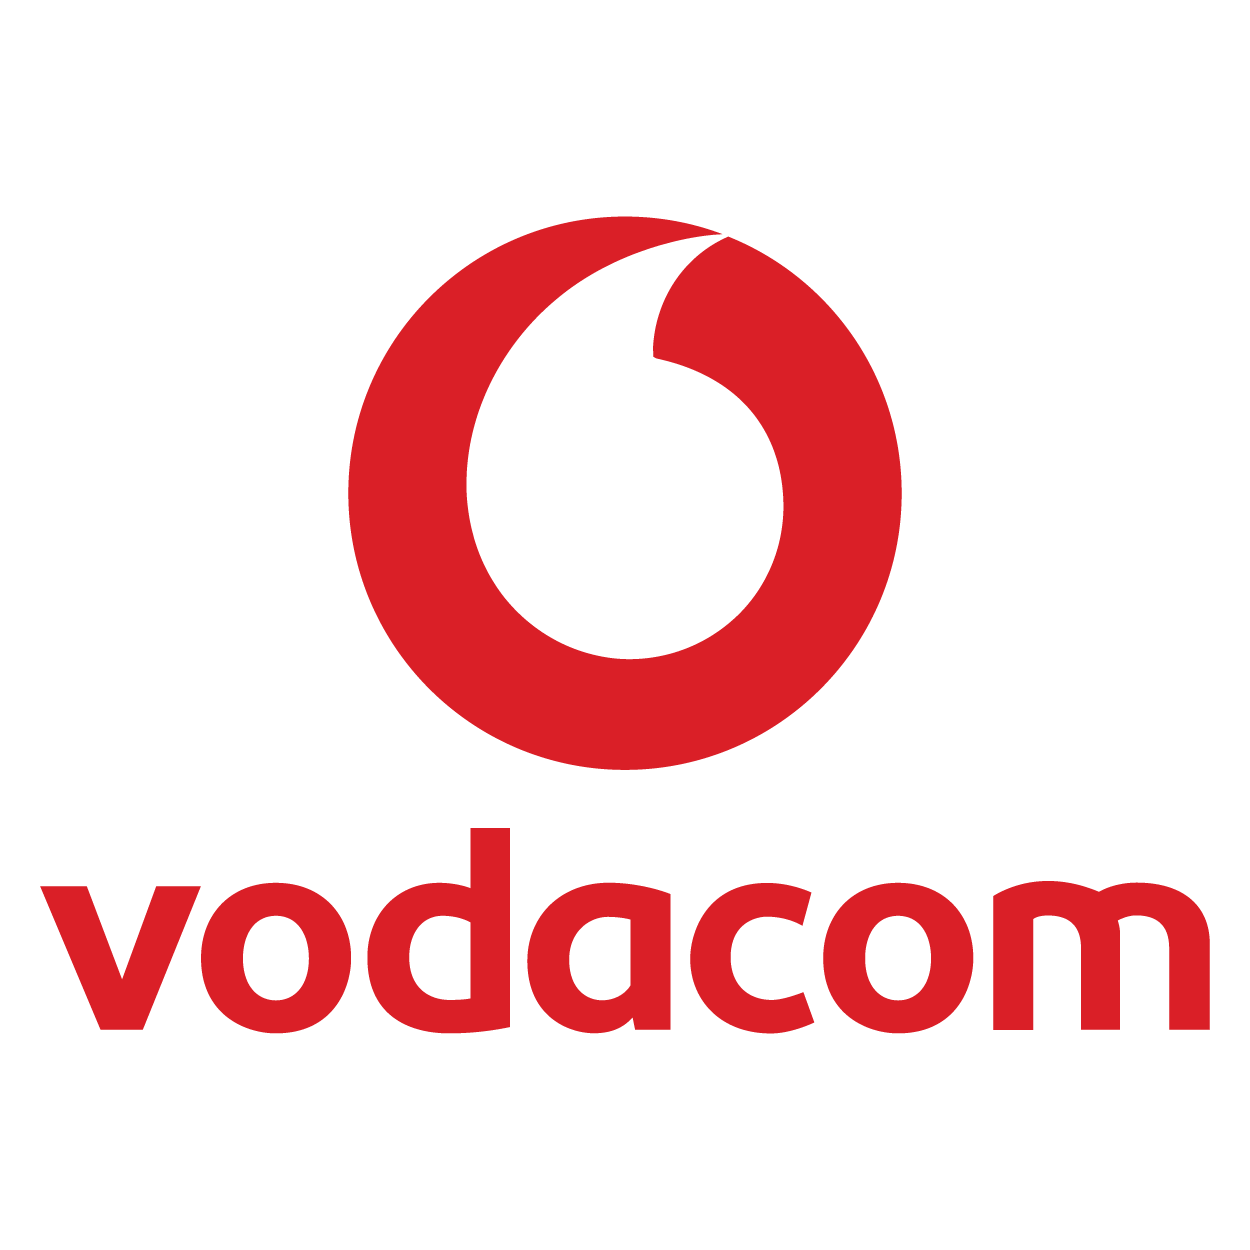 Vodacom Logo png